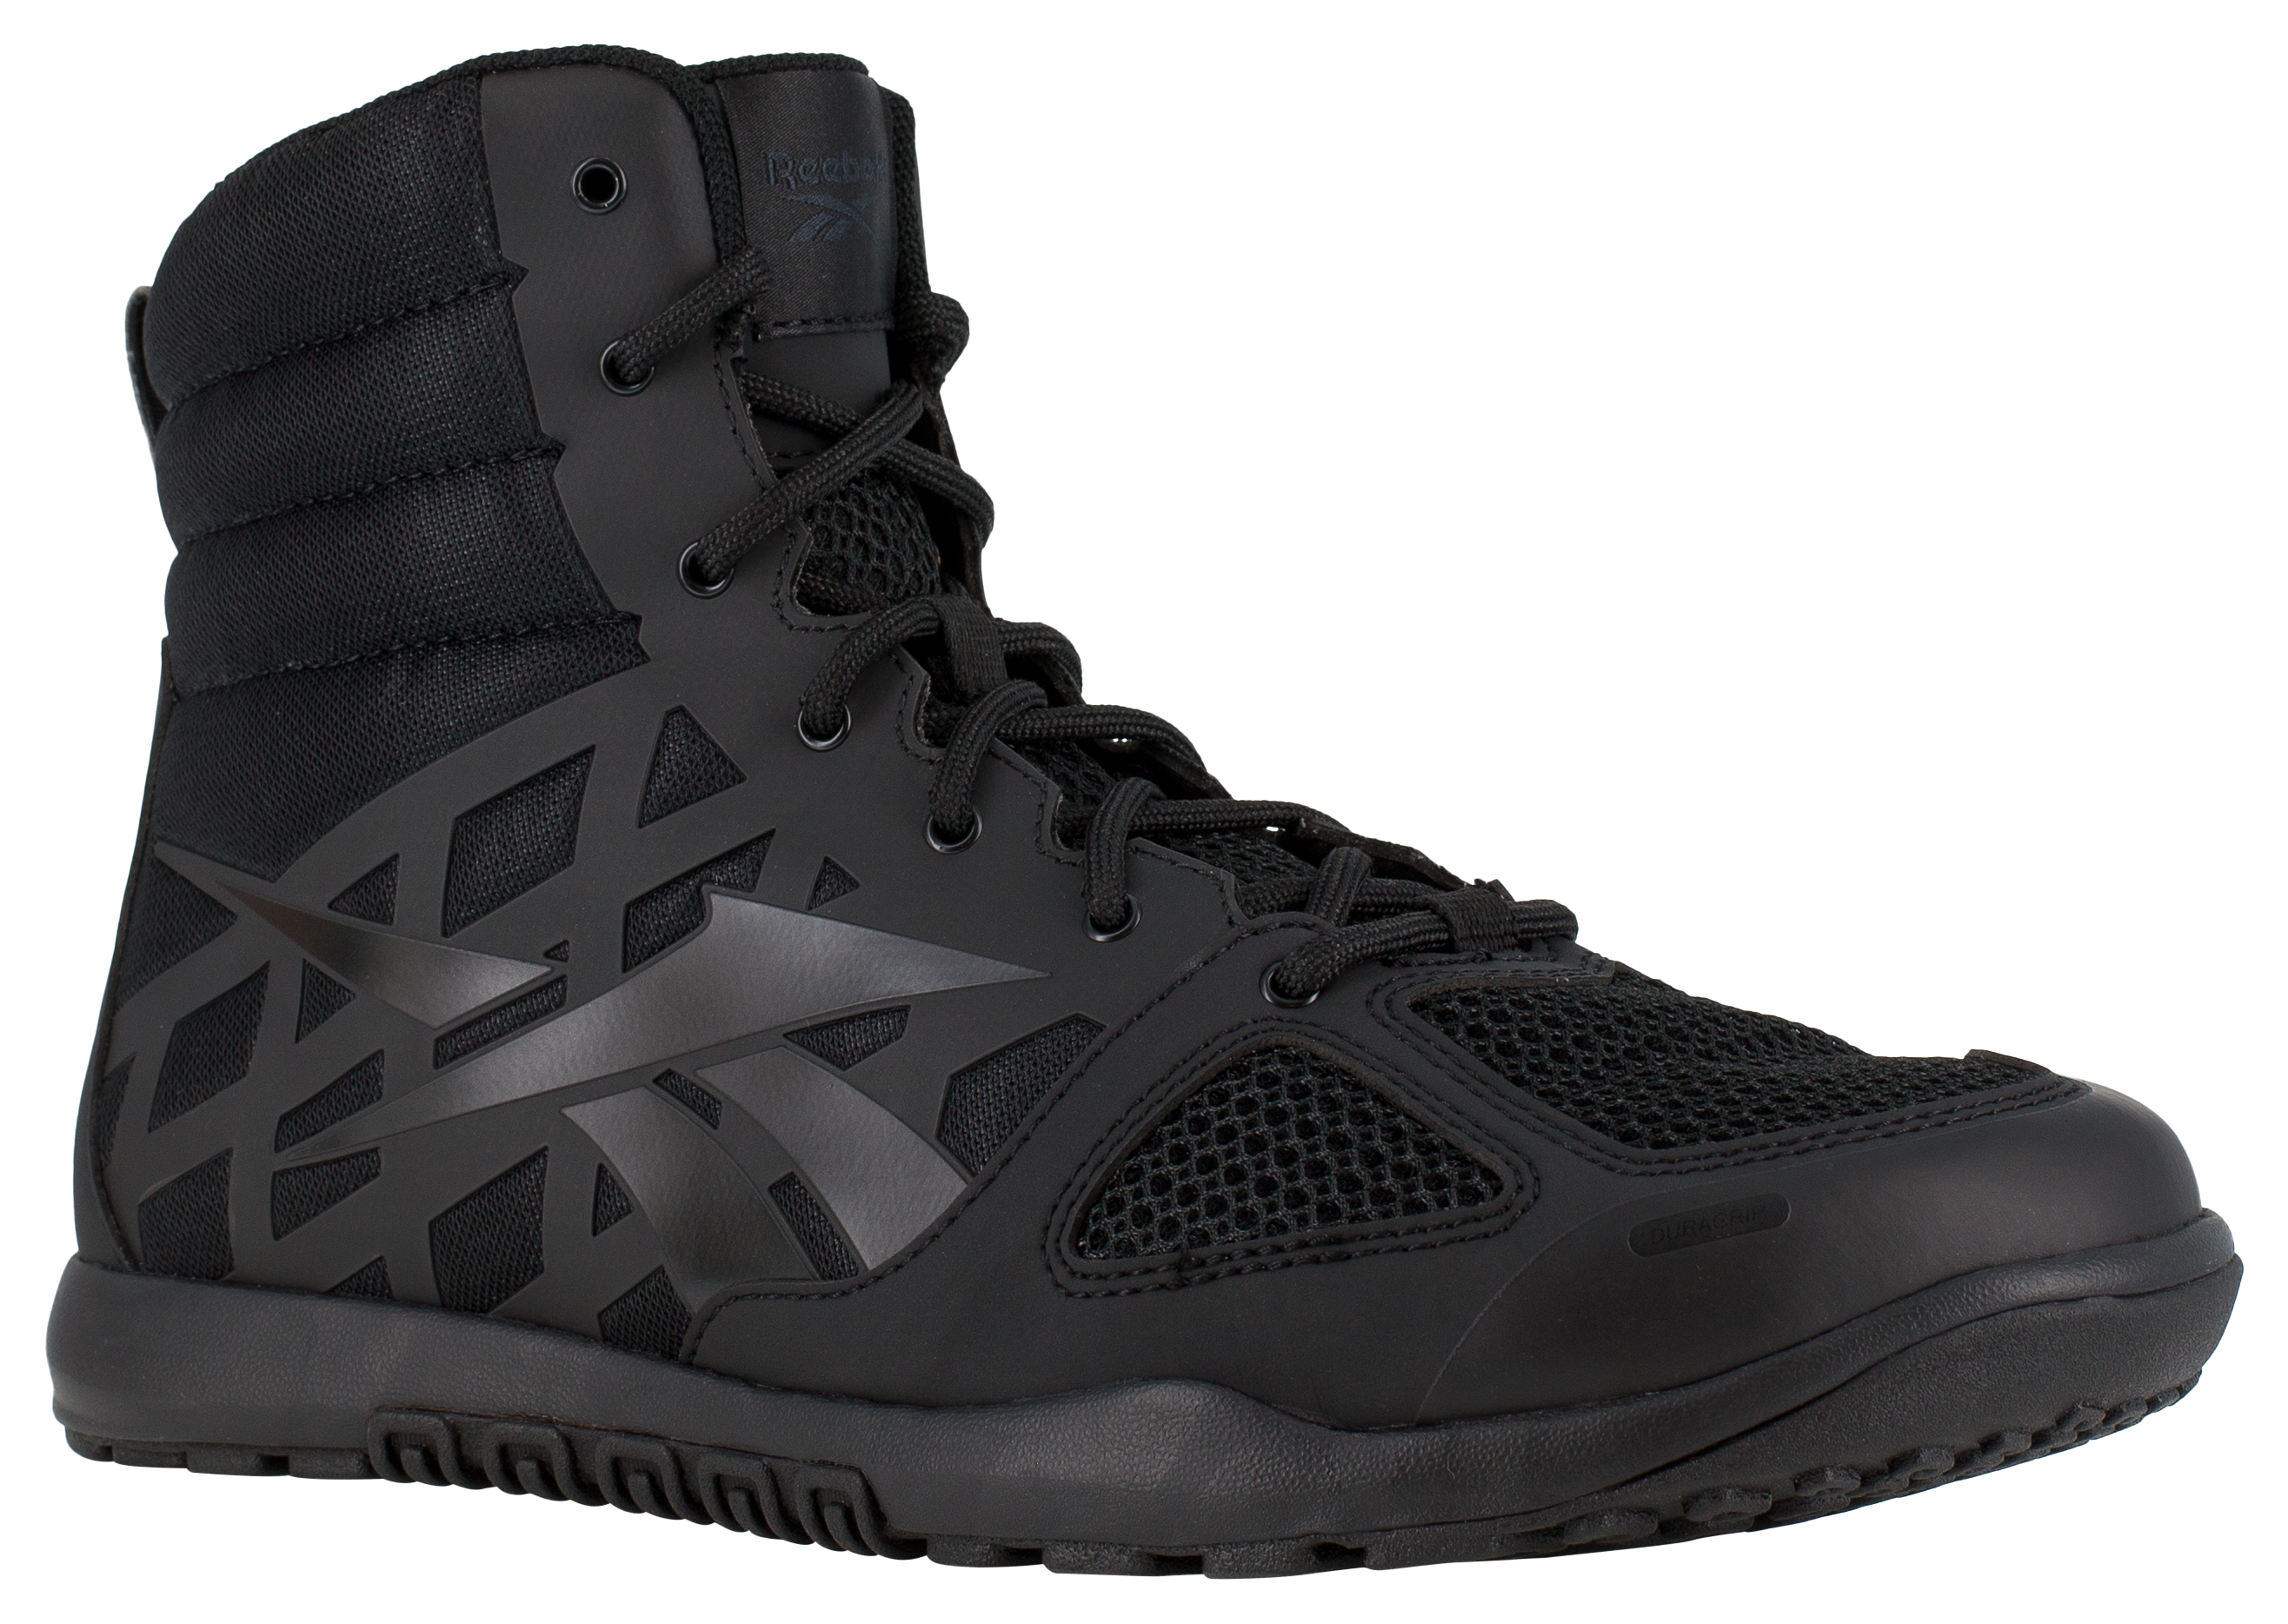 Reebok Nano Tactical 6″ Tactical Boots for Men - Black - 7.5W